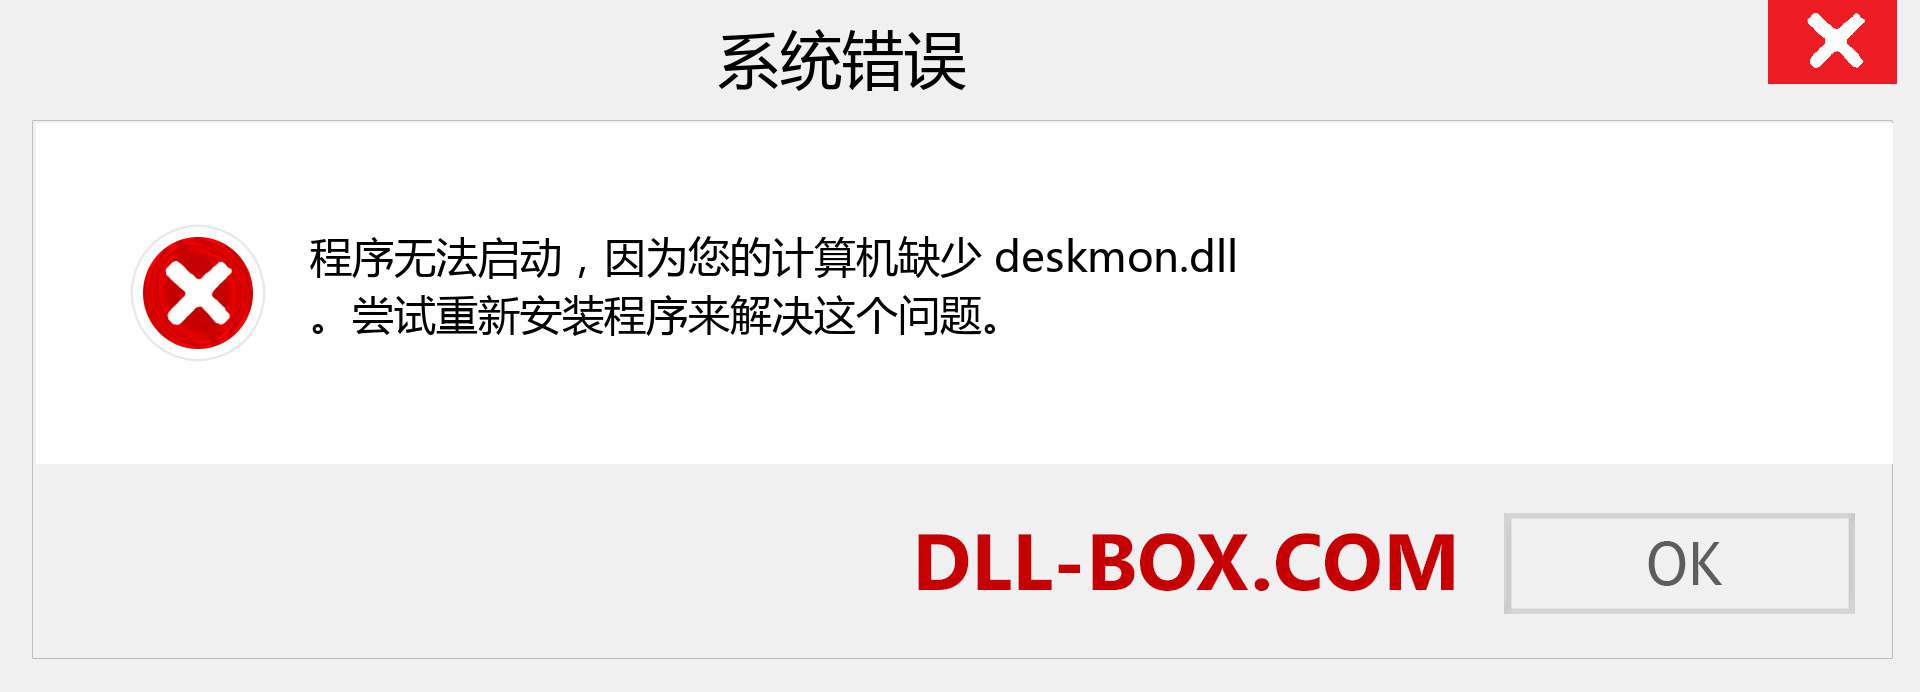 deskmon.dll 文件丢失？。 适用于 Windows 7、8、10 的下载 - 修复 Windows、照片、图像上的 deskmon dll 丢失错误